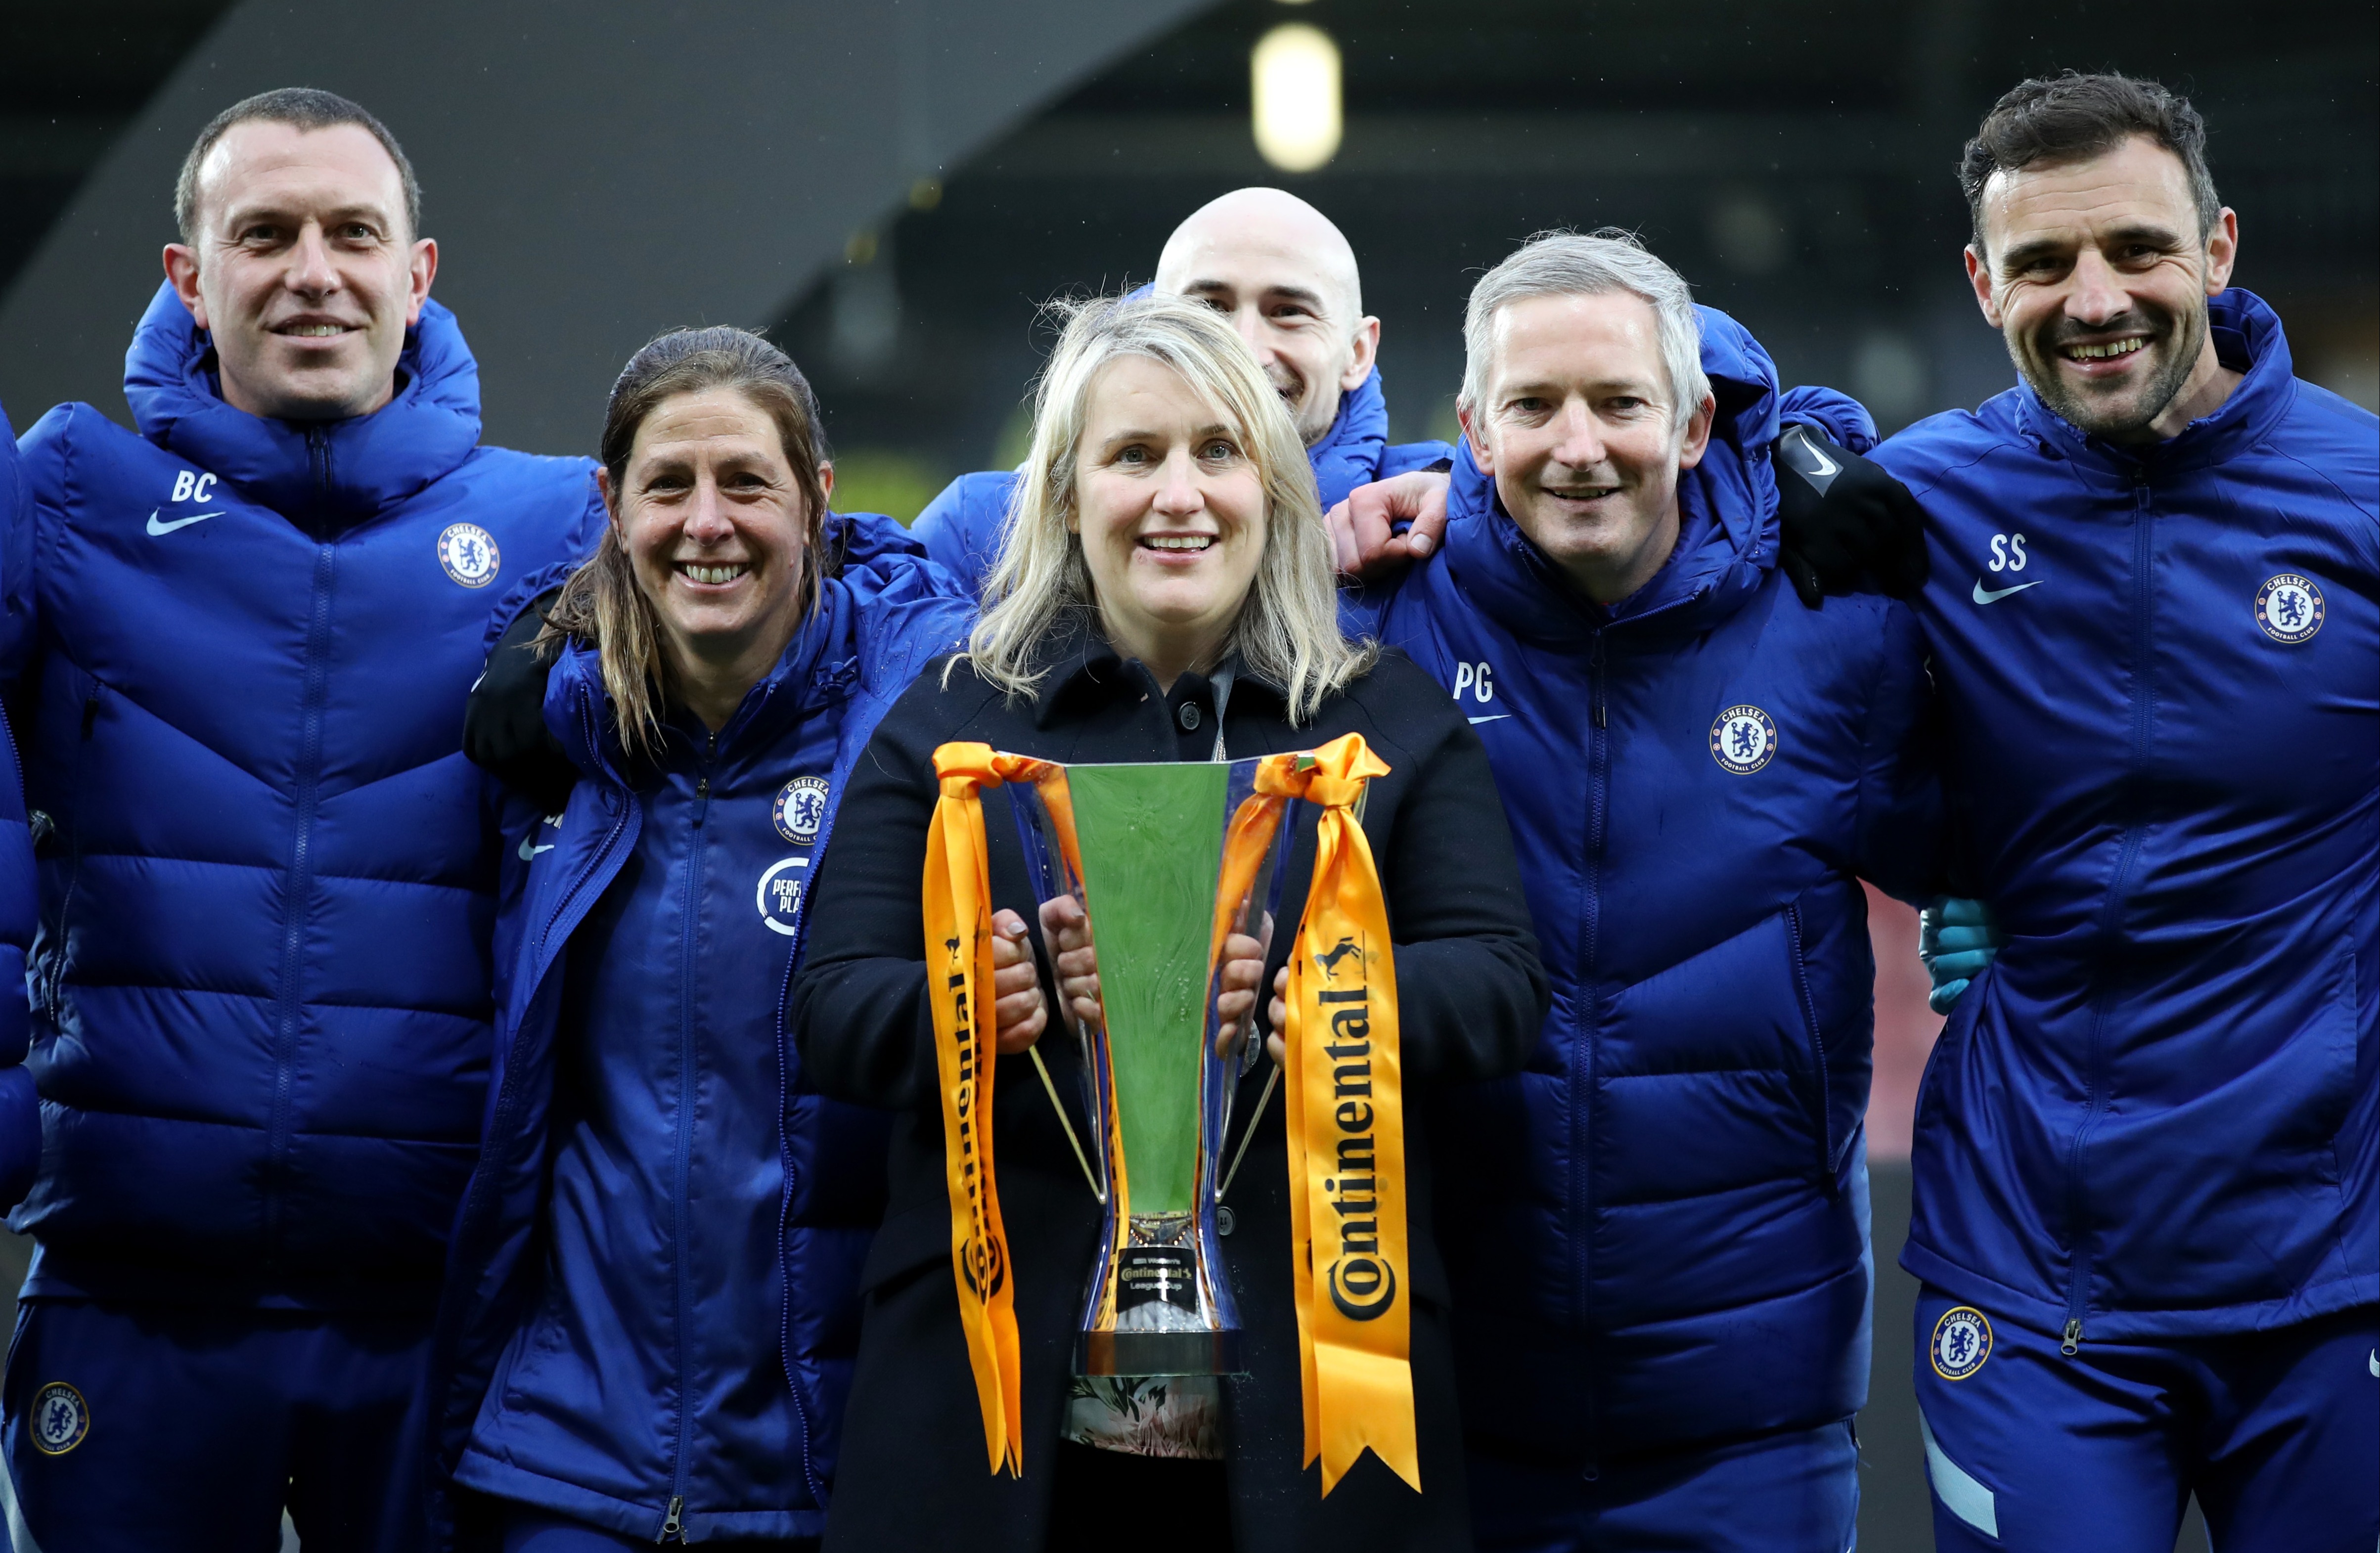 Den letzten Triumph in einem Conti-Cup-Finale feierte Chelsea im Jahr 2021, als man Bristol City mit 6:0 besiegte